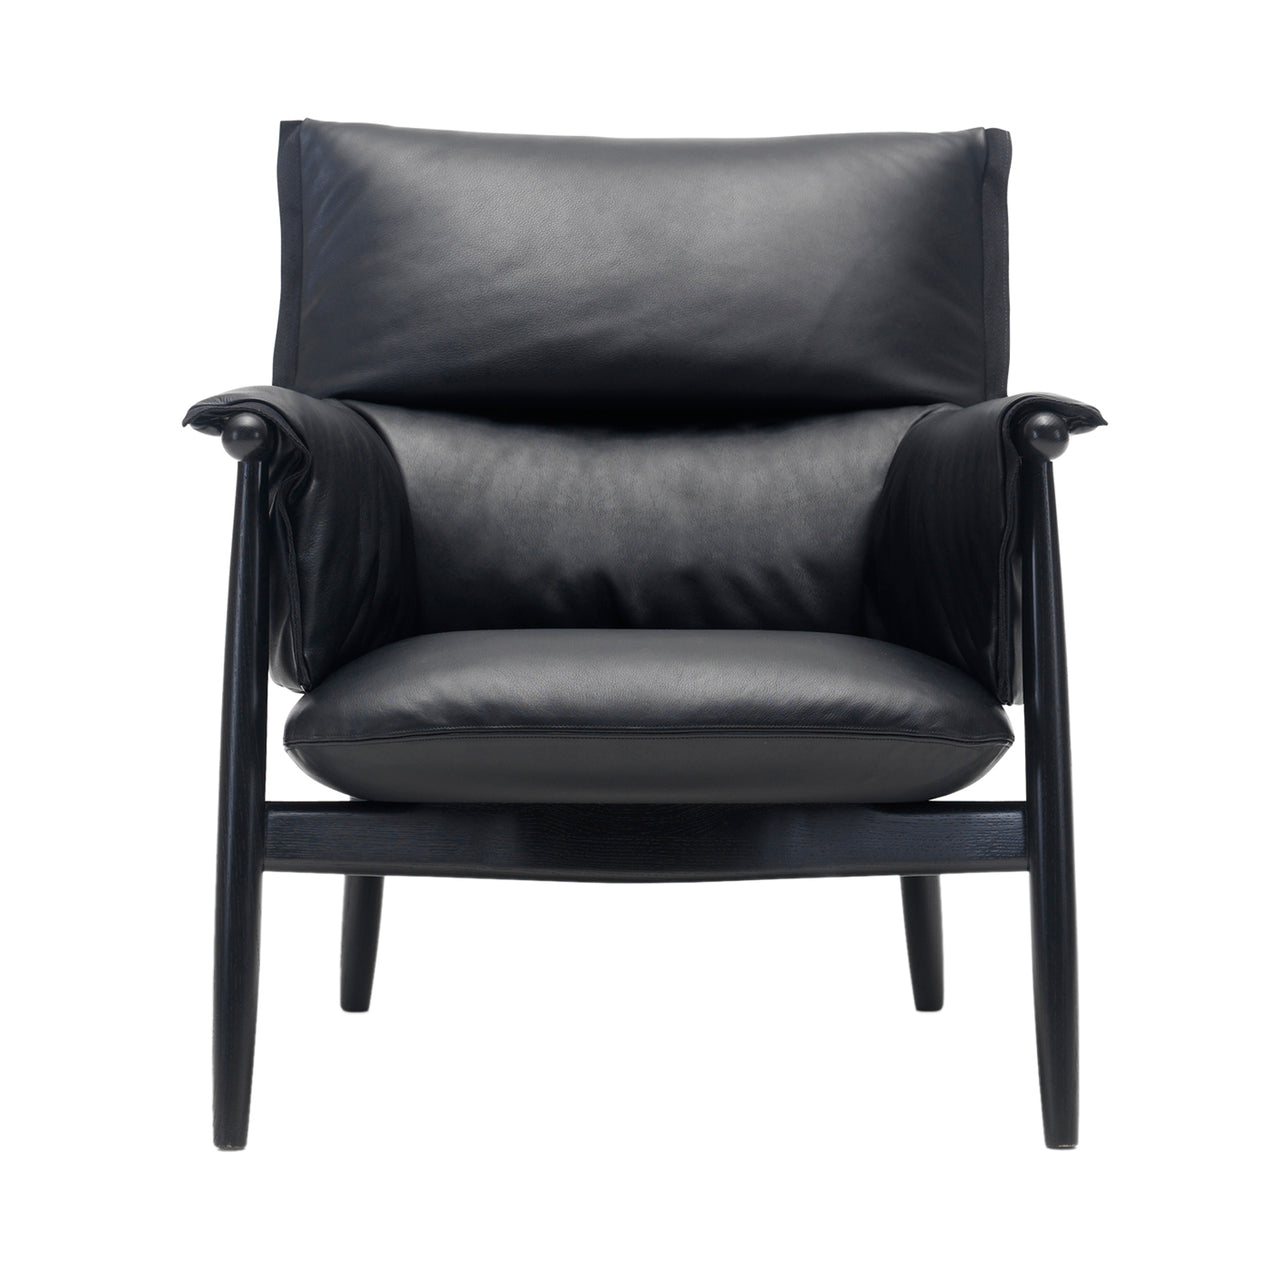 E015 Embrace Lounge Chair: Black Edging Strip + Black Oak